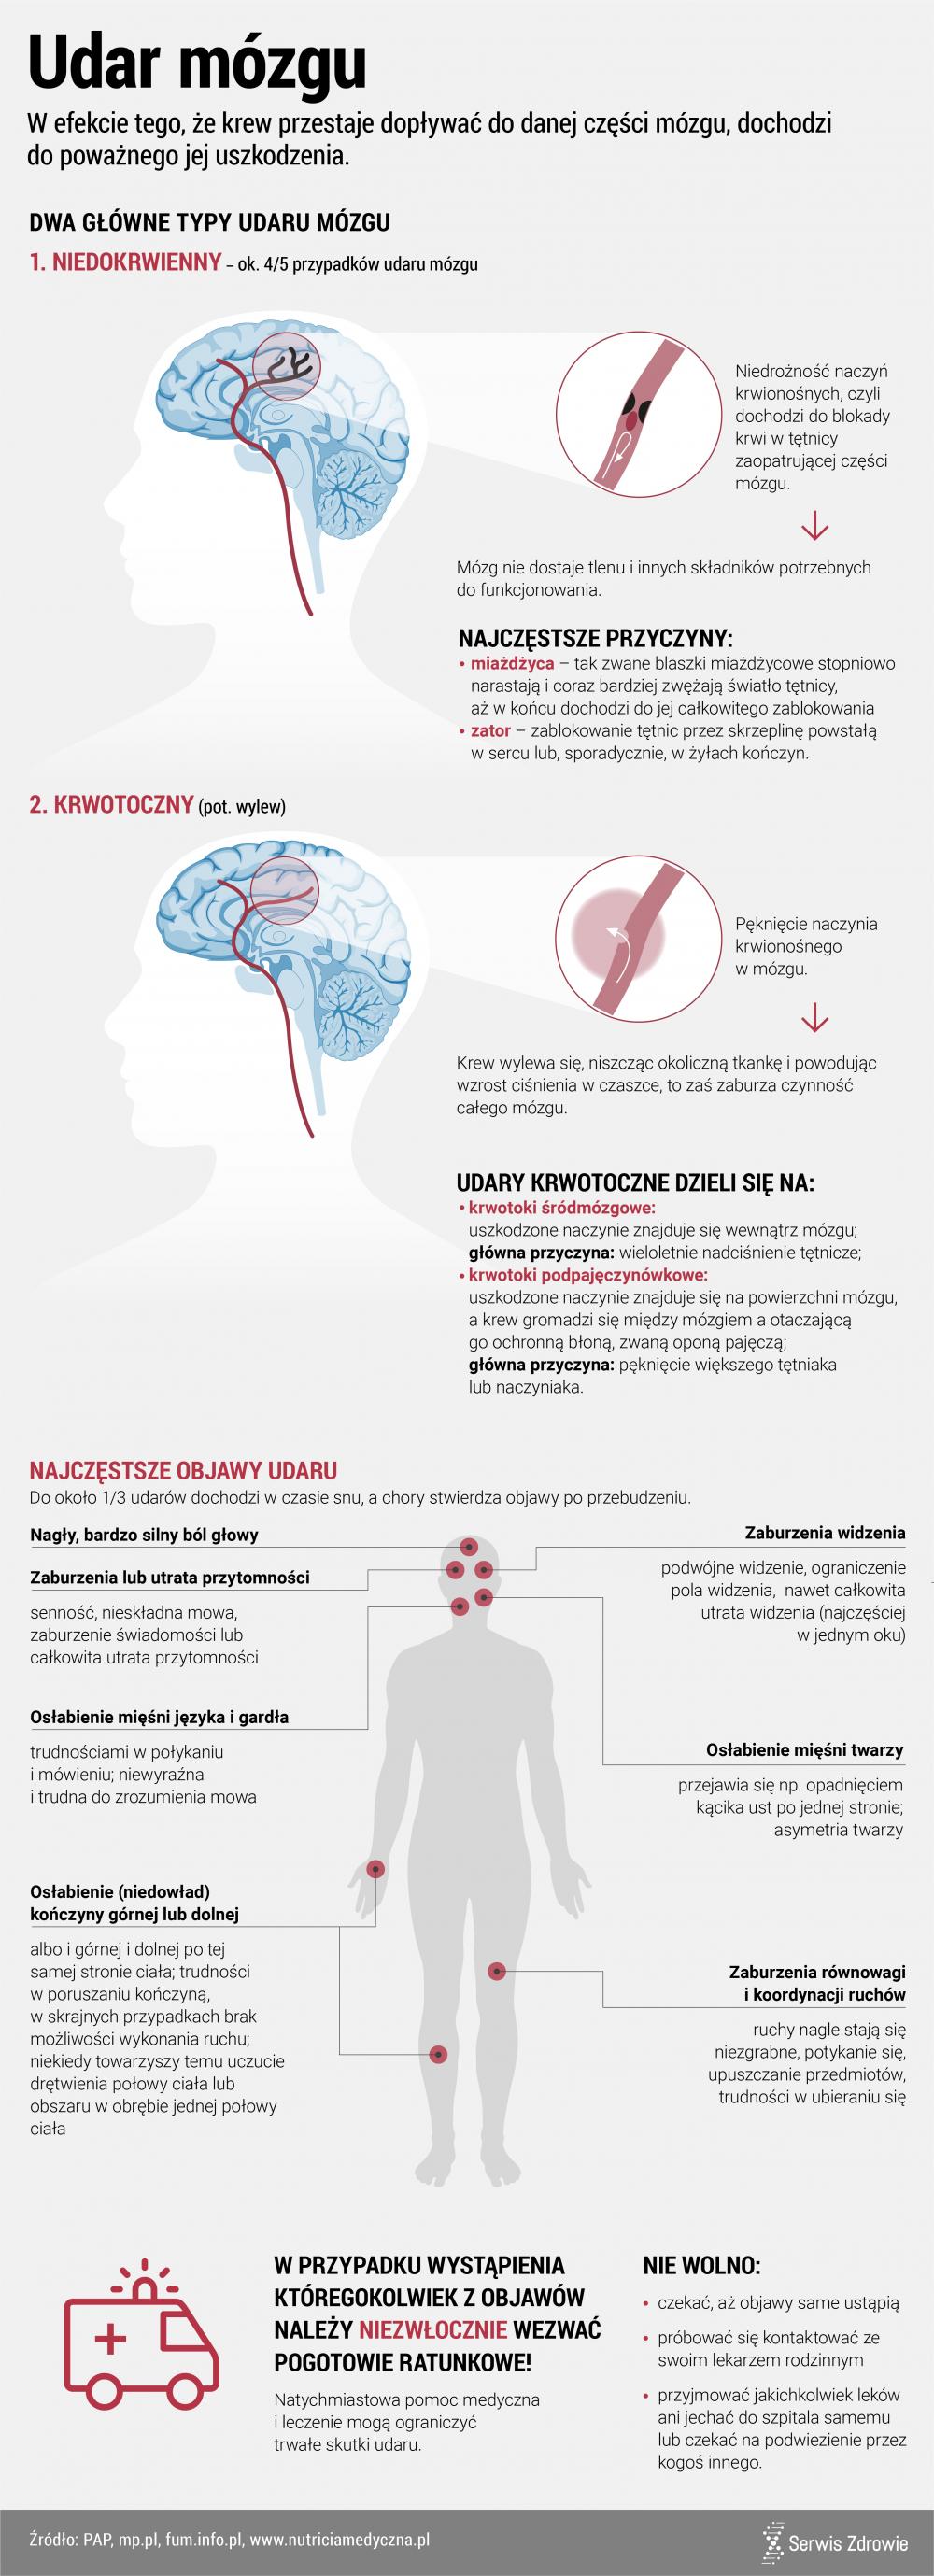 Infografika PAP/Serwis Zdrowie/Udar mózgu_objawy